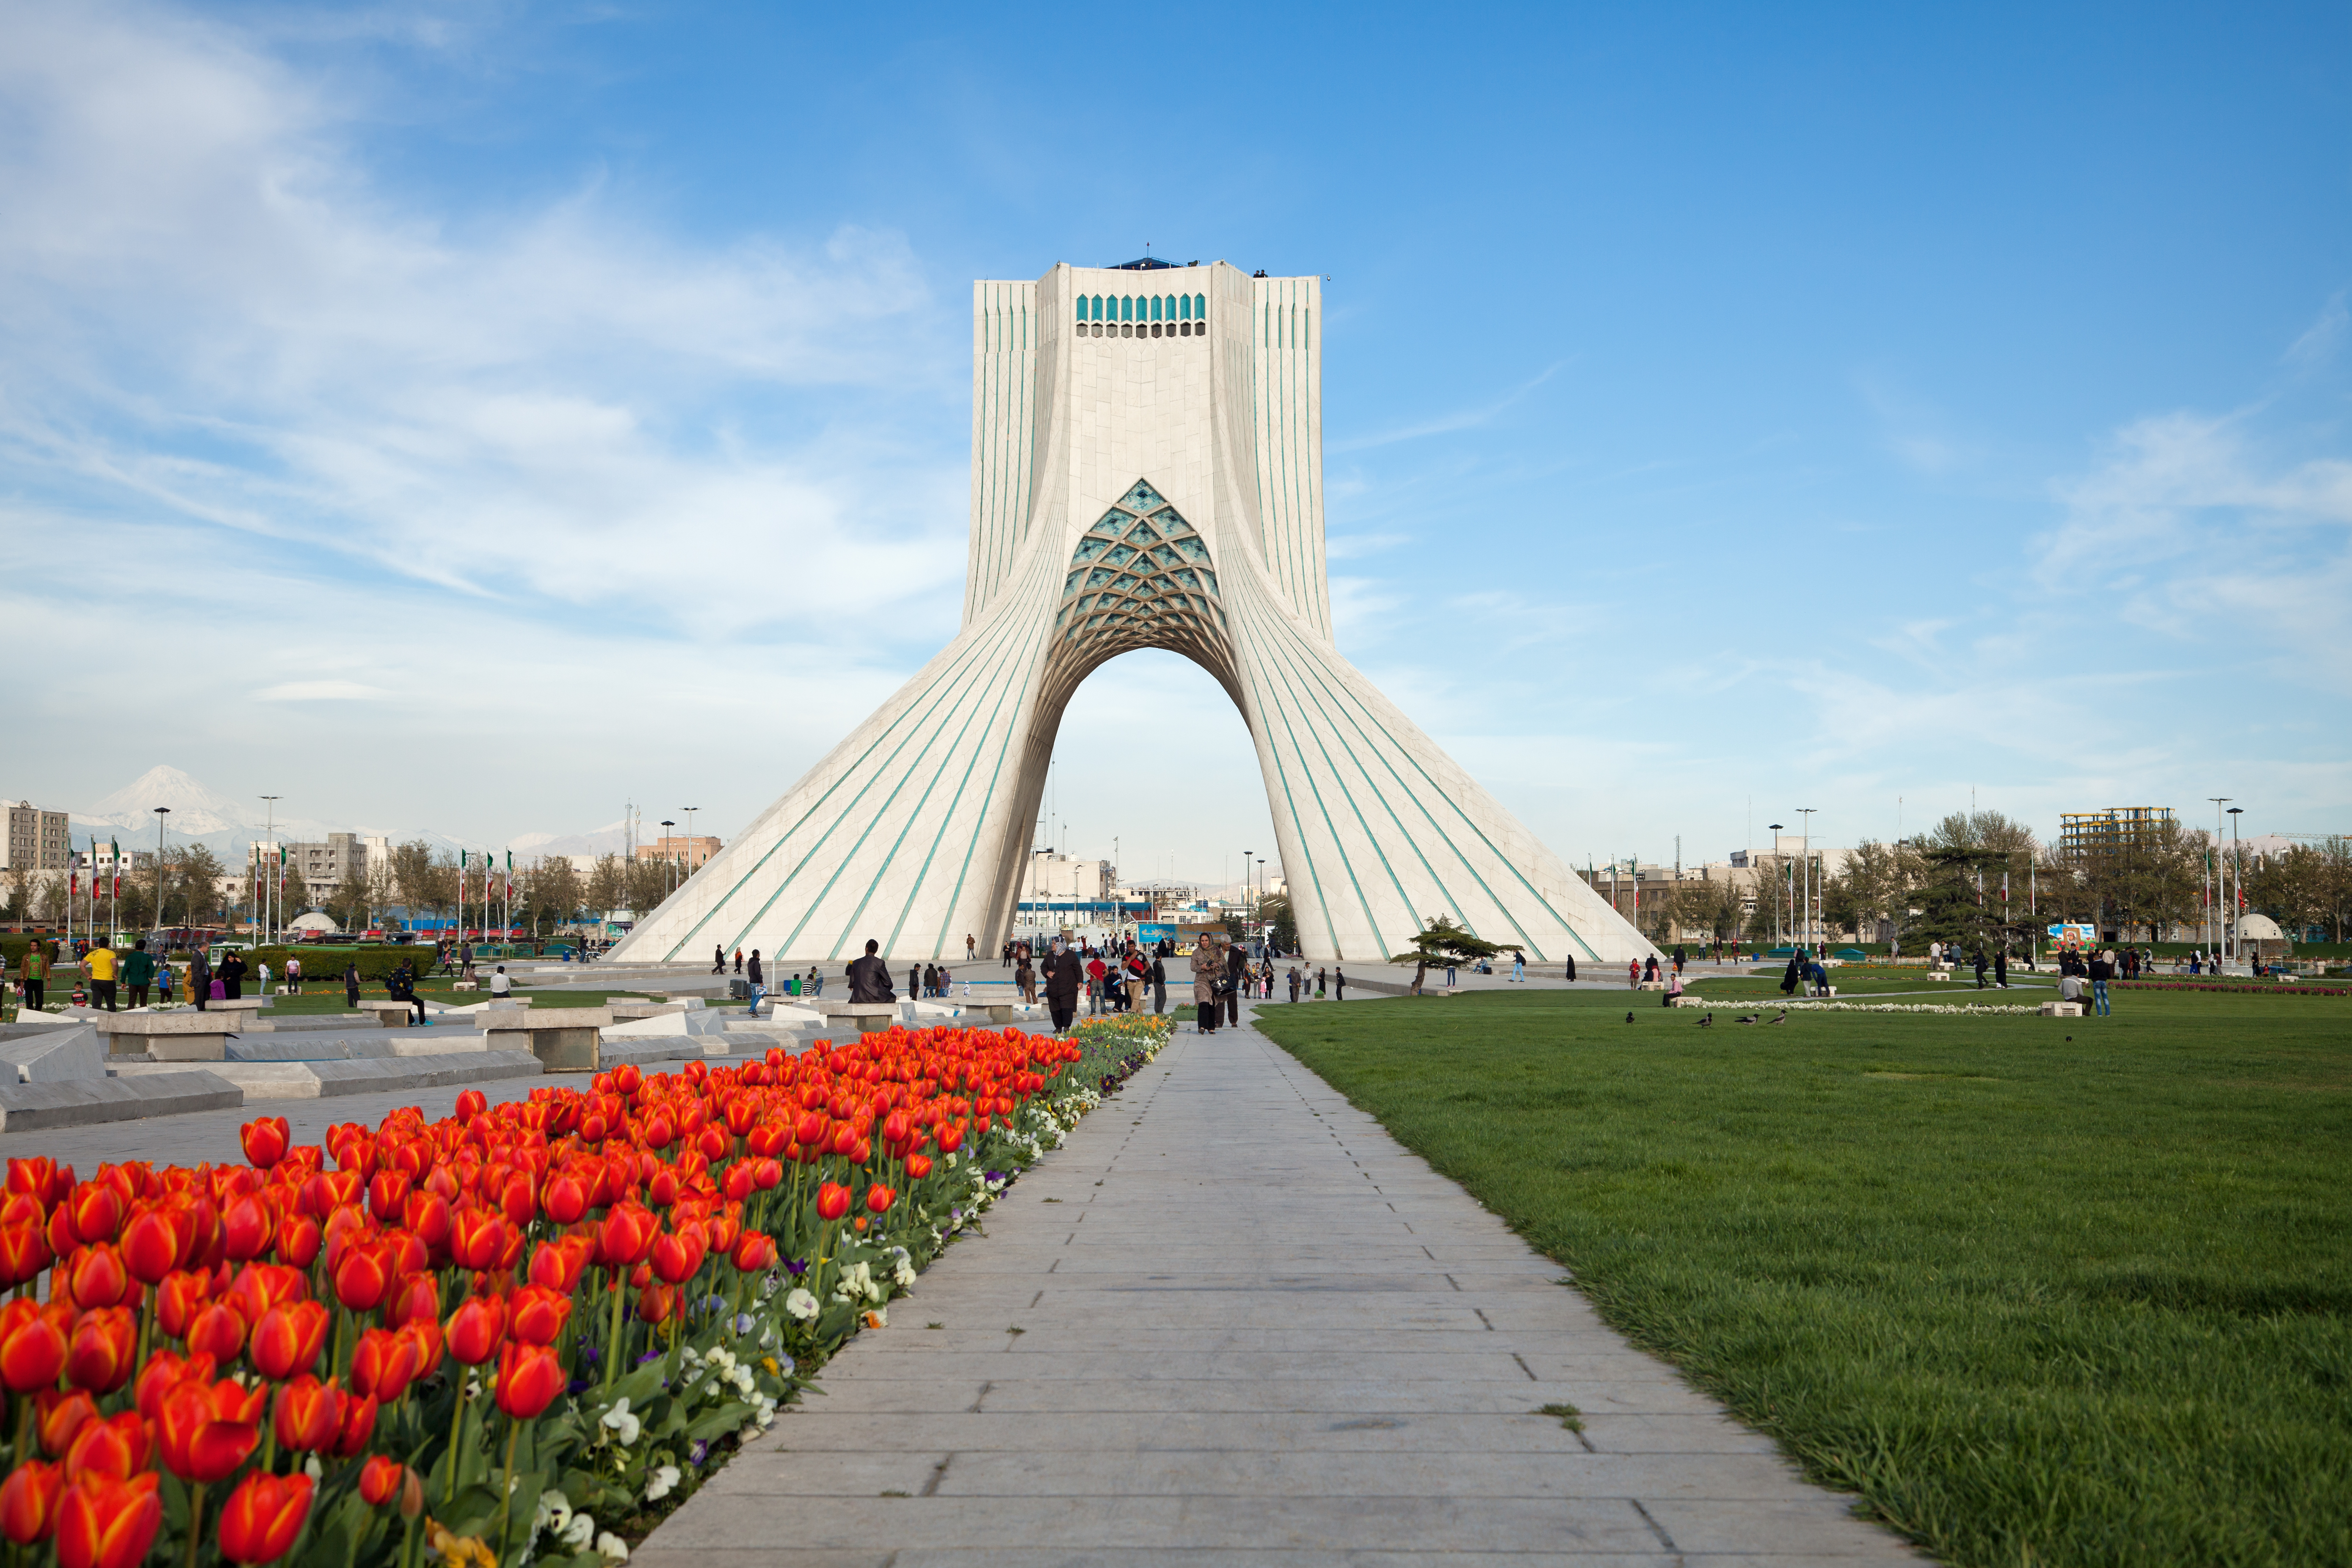 عکس با کیفیت برج میلاد تهران